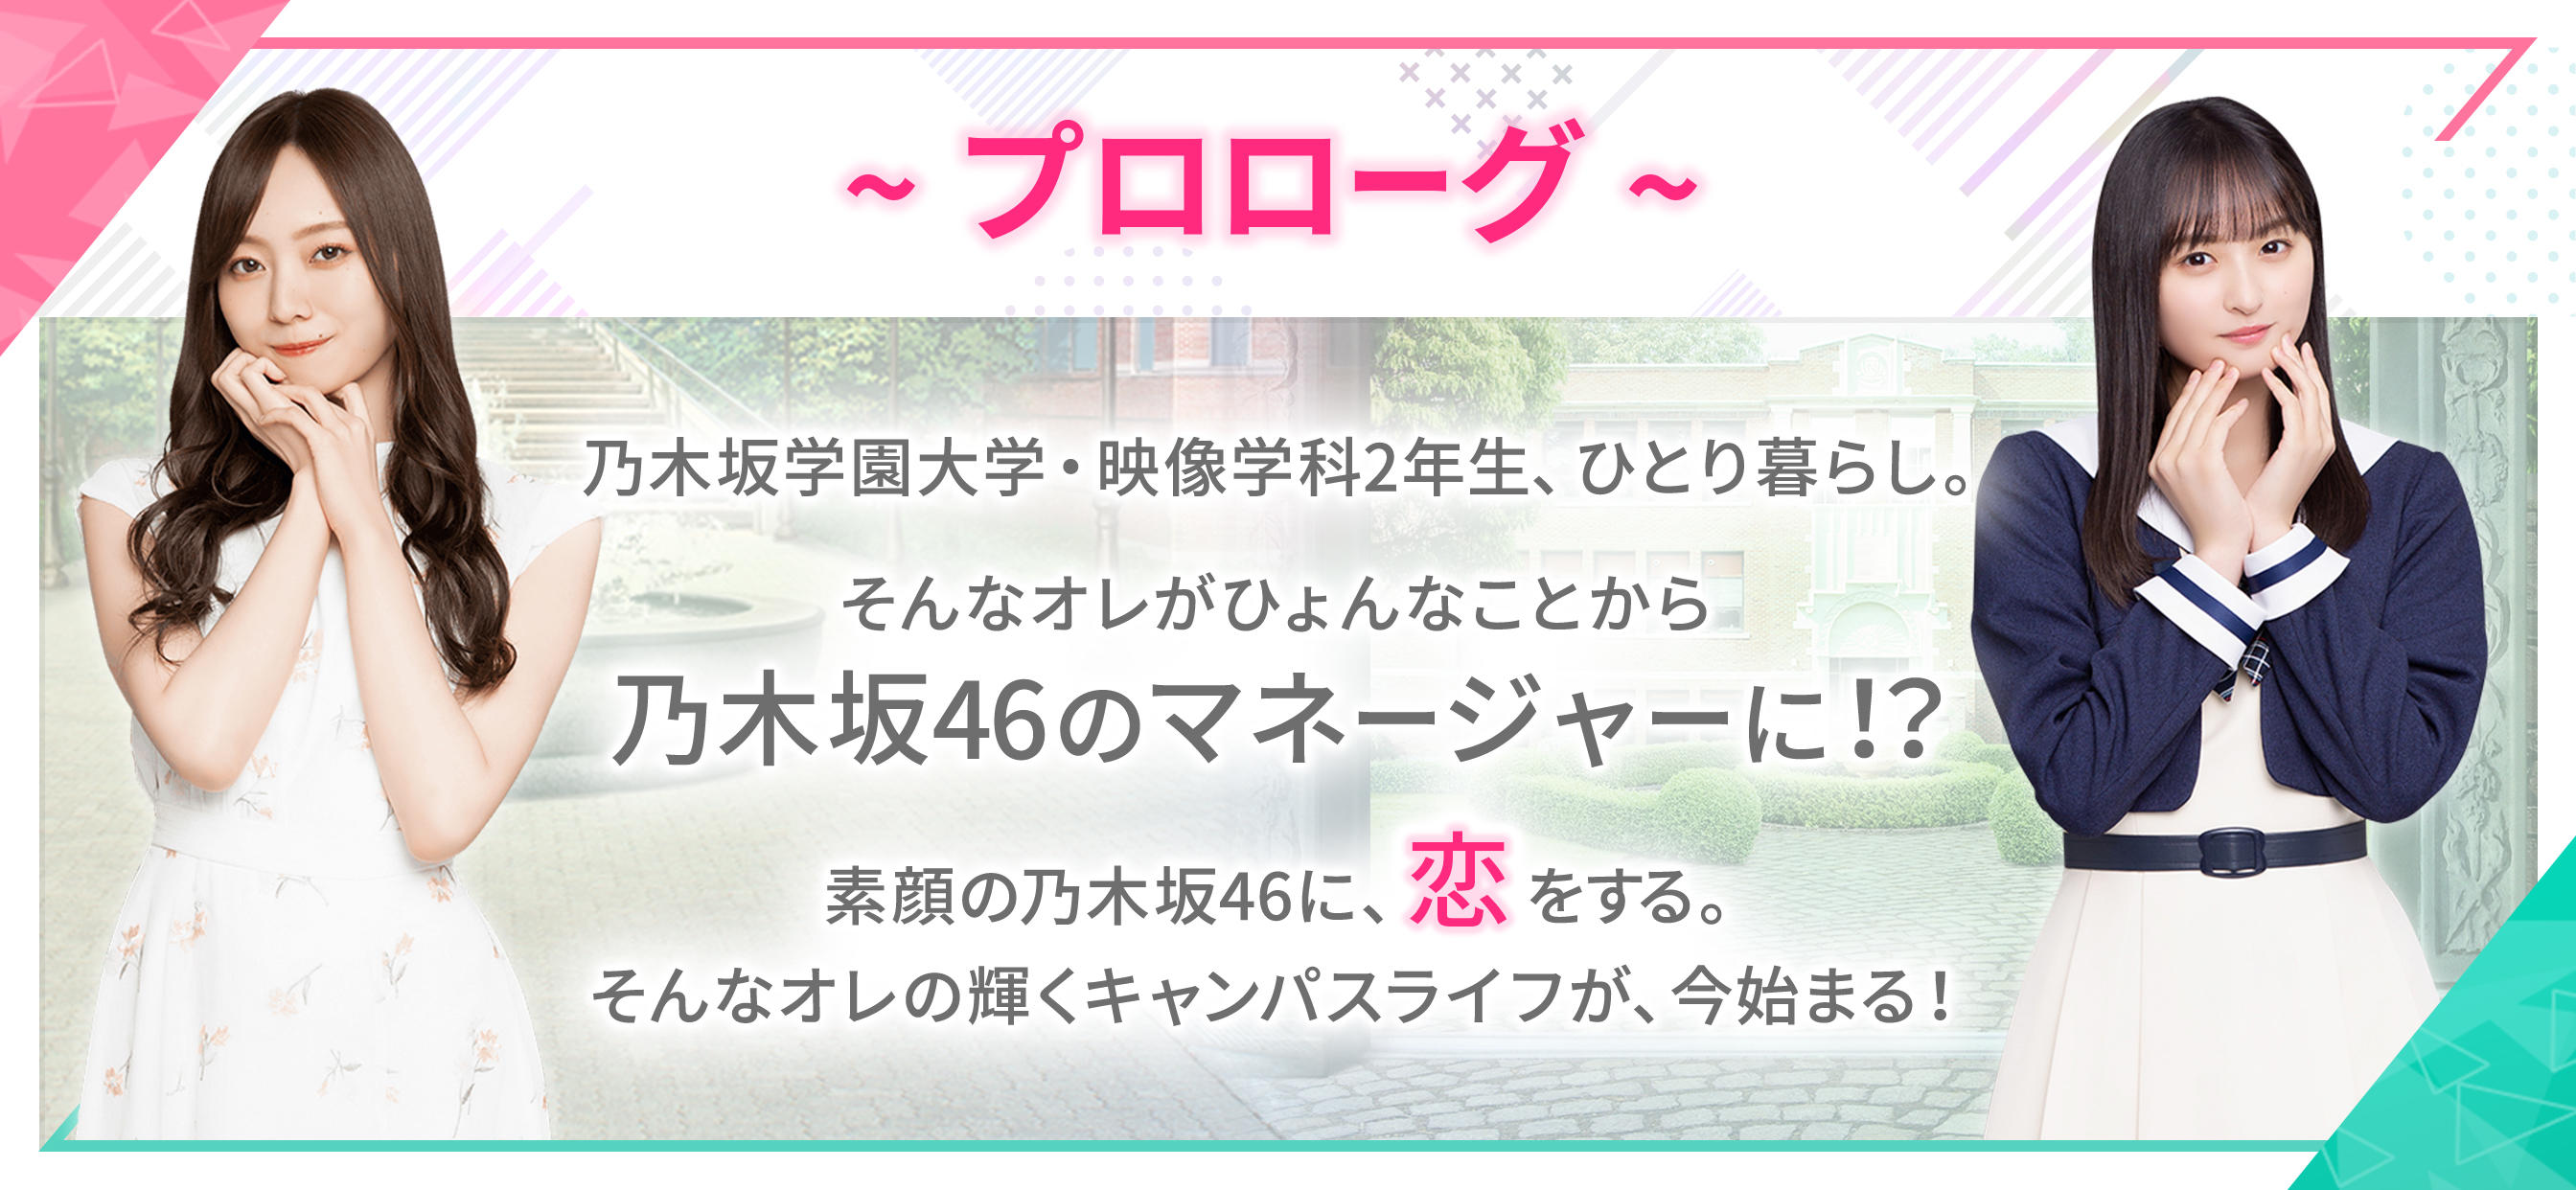 Screenshot 1 of [Nogizaka46 Official Game] Nogi Koi-I me apaixonei naquele dia embaixo da ladeira 